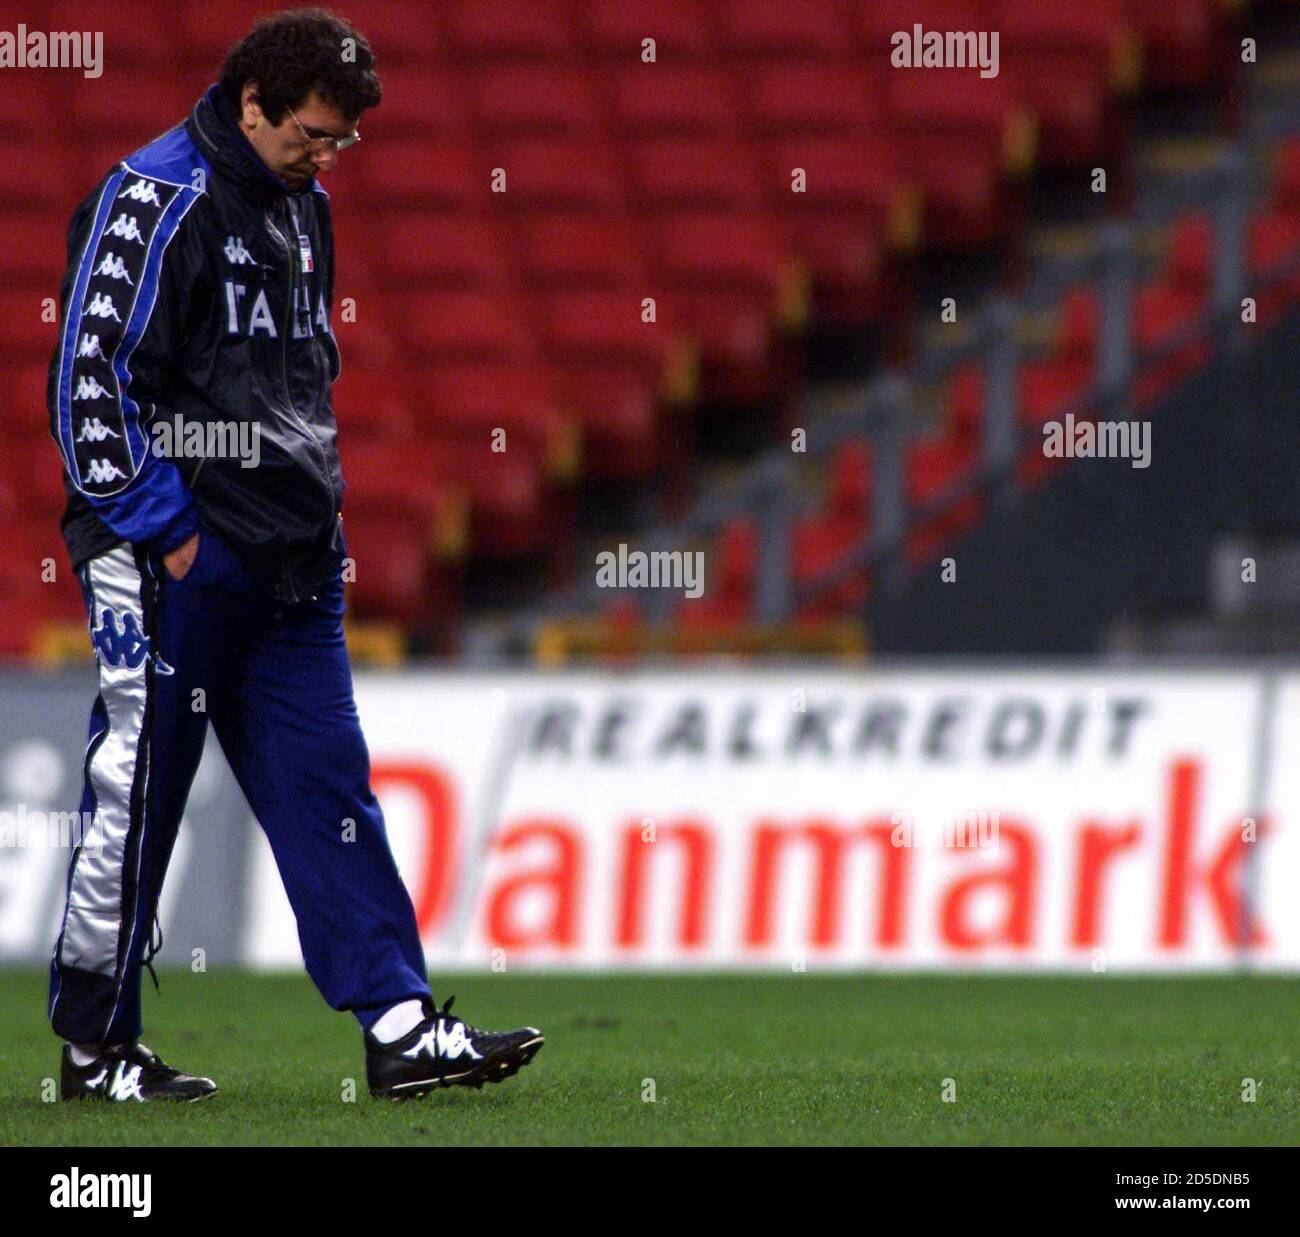 Dino Zoff, allenatore di squadra italiano ed ex portiere nazionale, passa  un cartellone pubblicitario per una società danese durante una pratica per  la nazionale di calcio italiana a Copenhagen nel marzo 26.